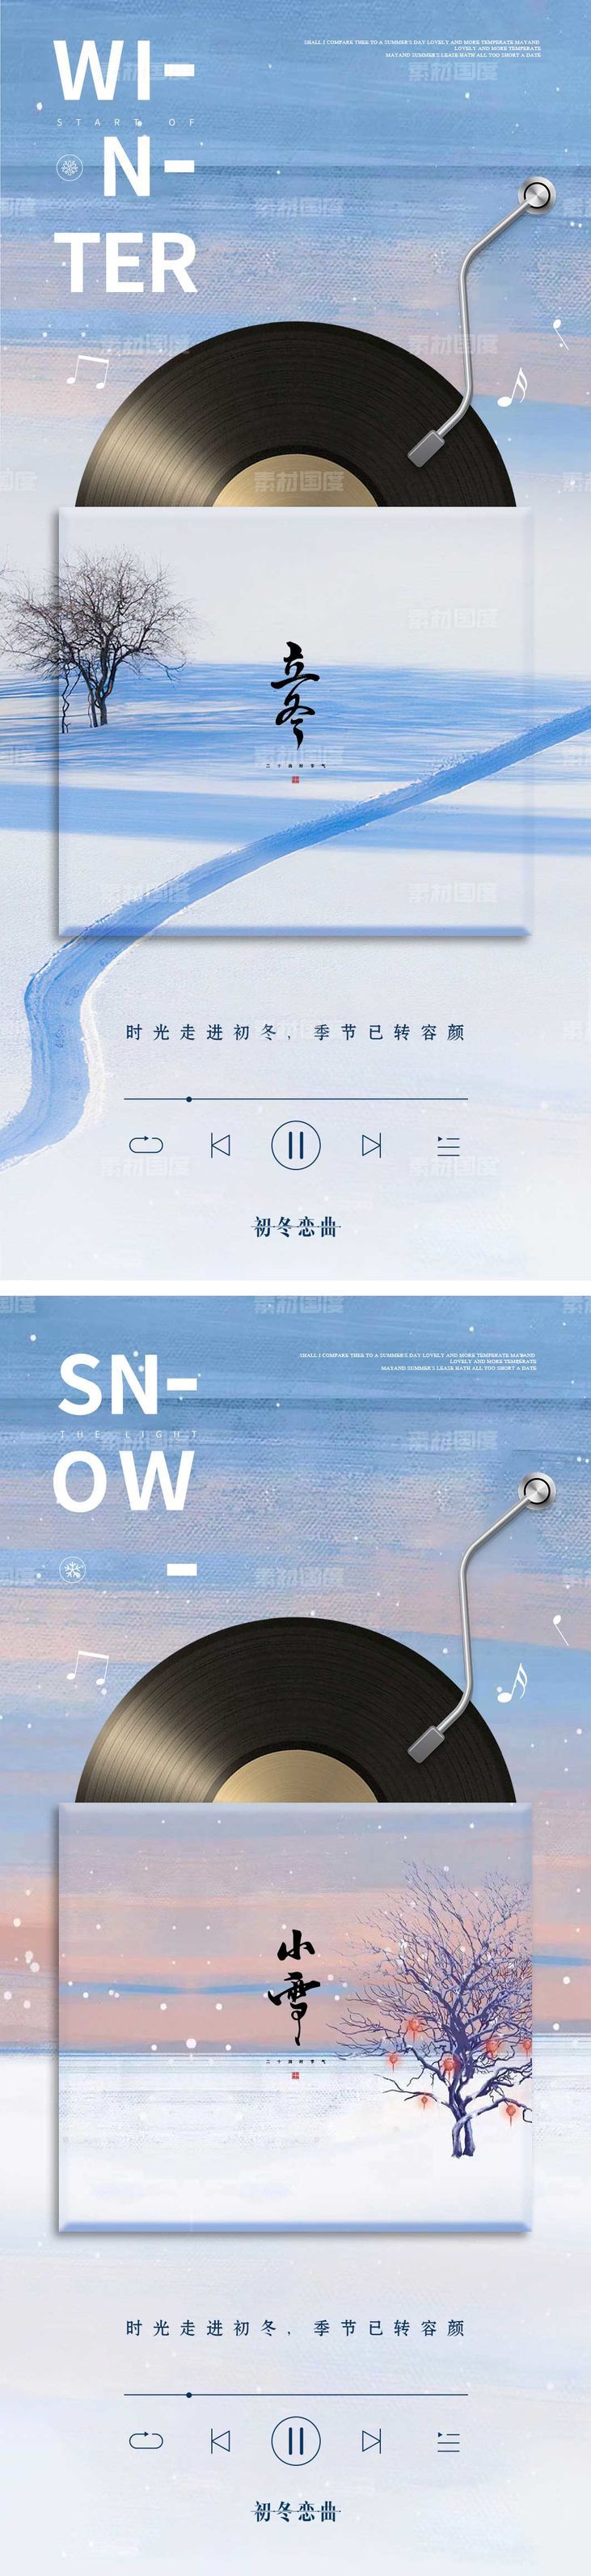 立冬/小雪海报 音乐唱片创意系列